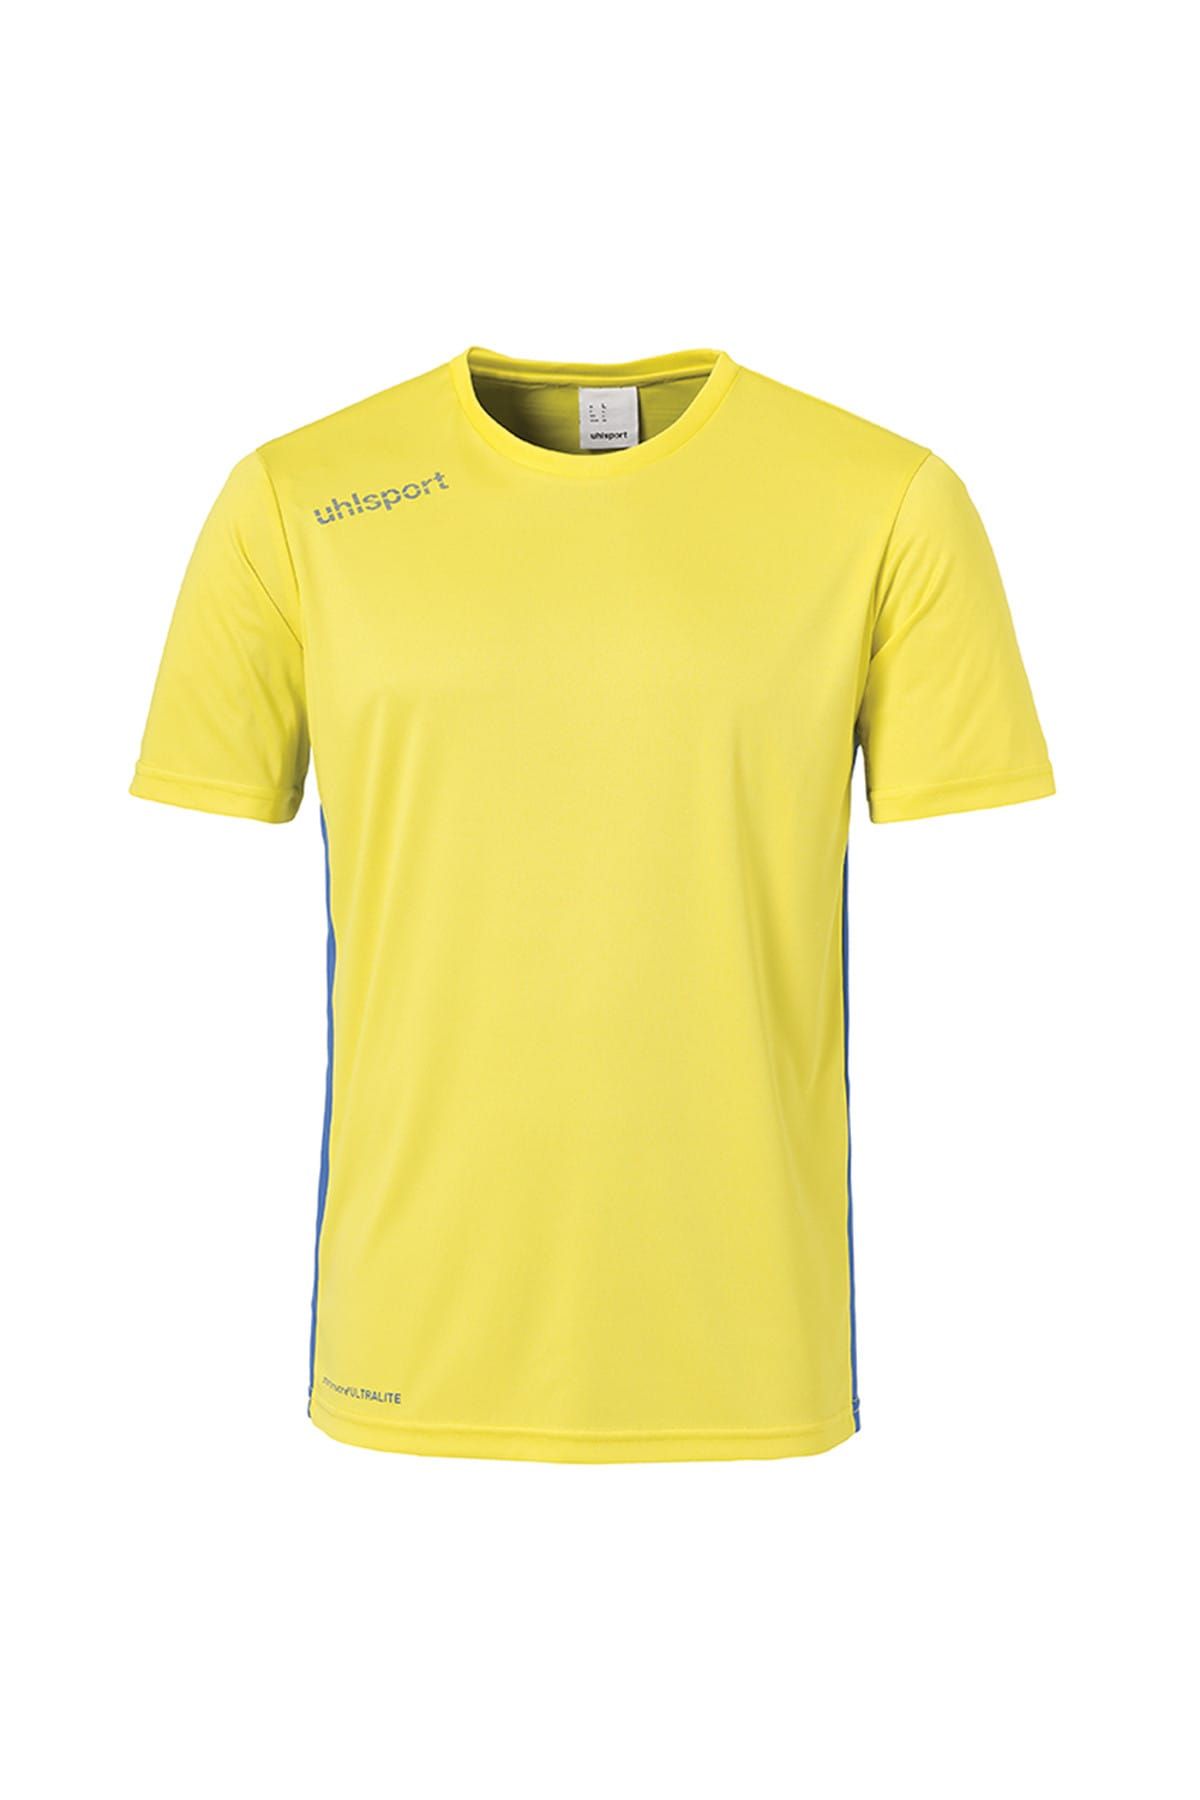 uhlsport Erkek T-shirt - Essentıal - 12.10.007.002.106.014